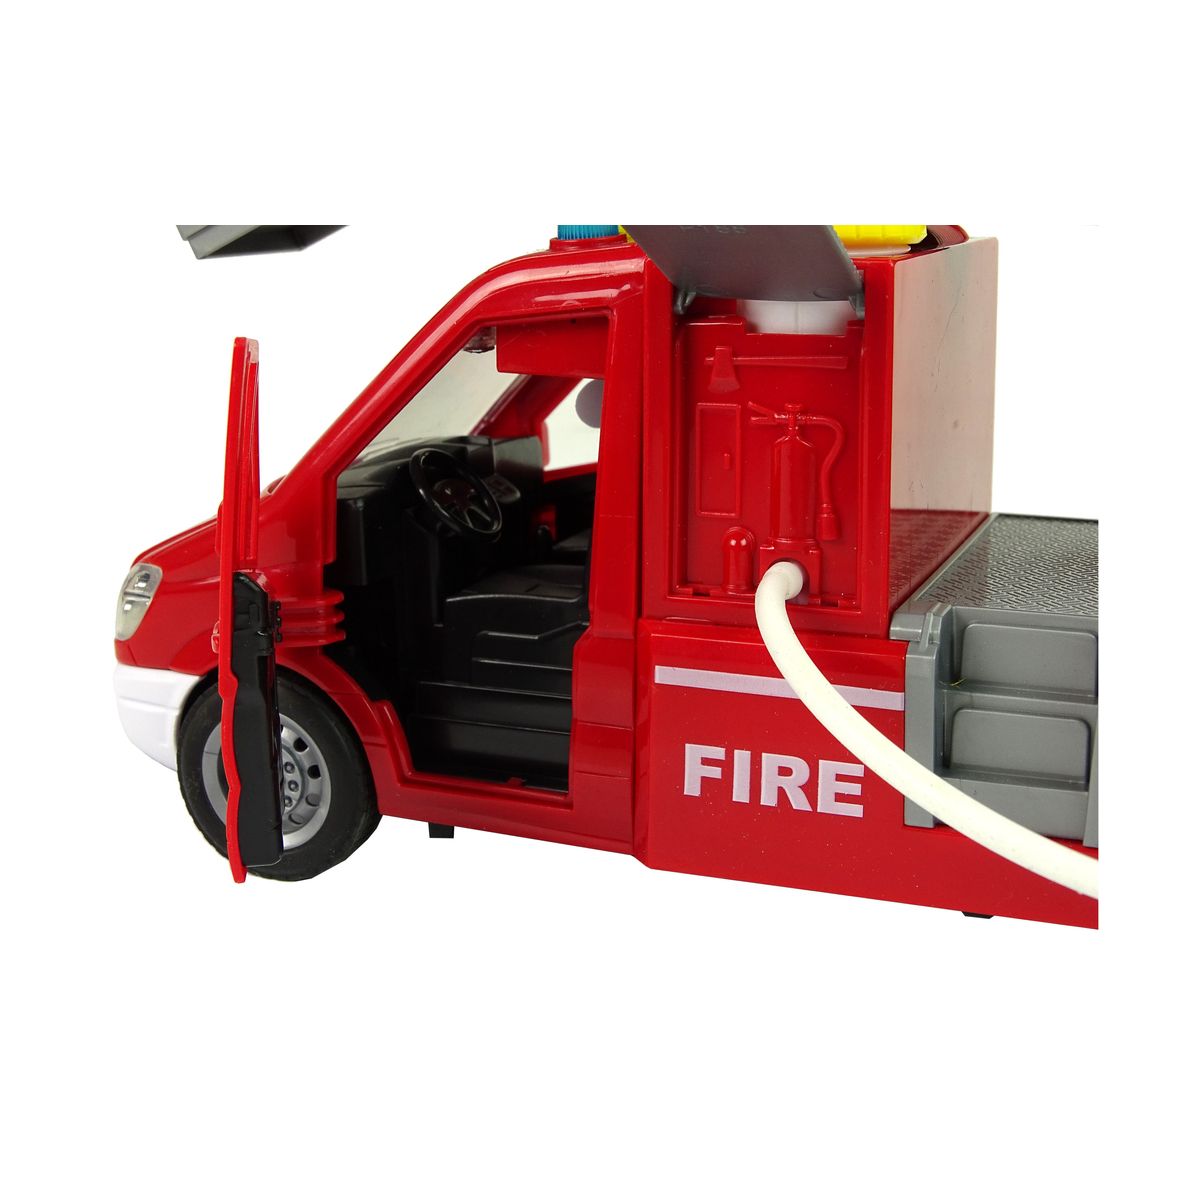 Samochód strażacki Czerwona Woda Dźwięki Światła Lean (10432)